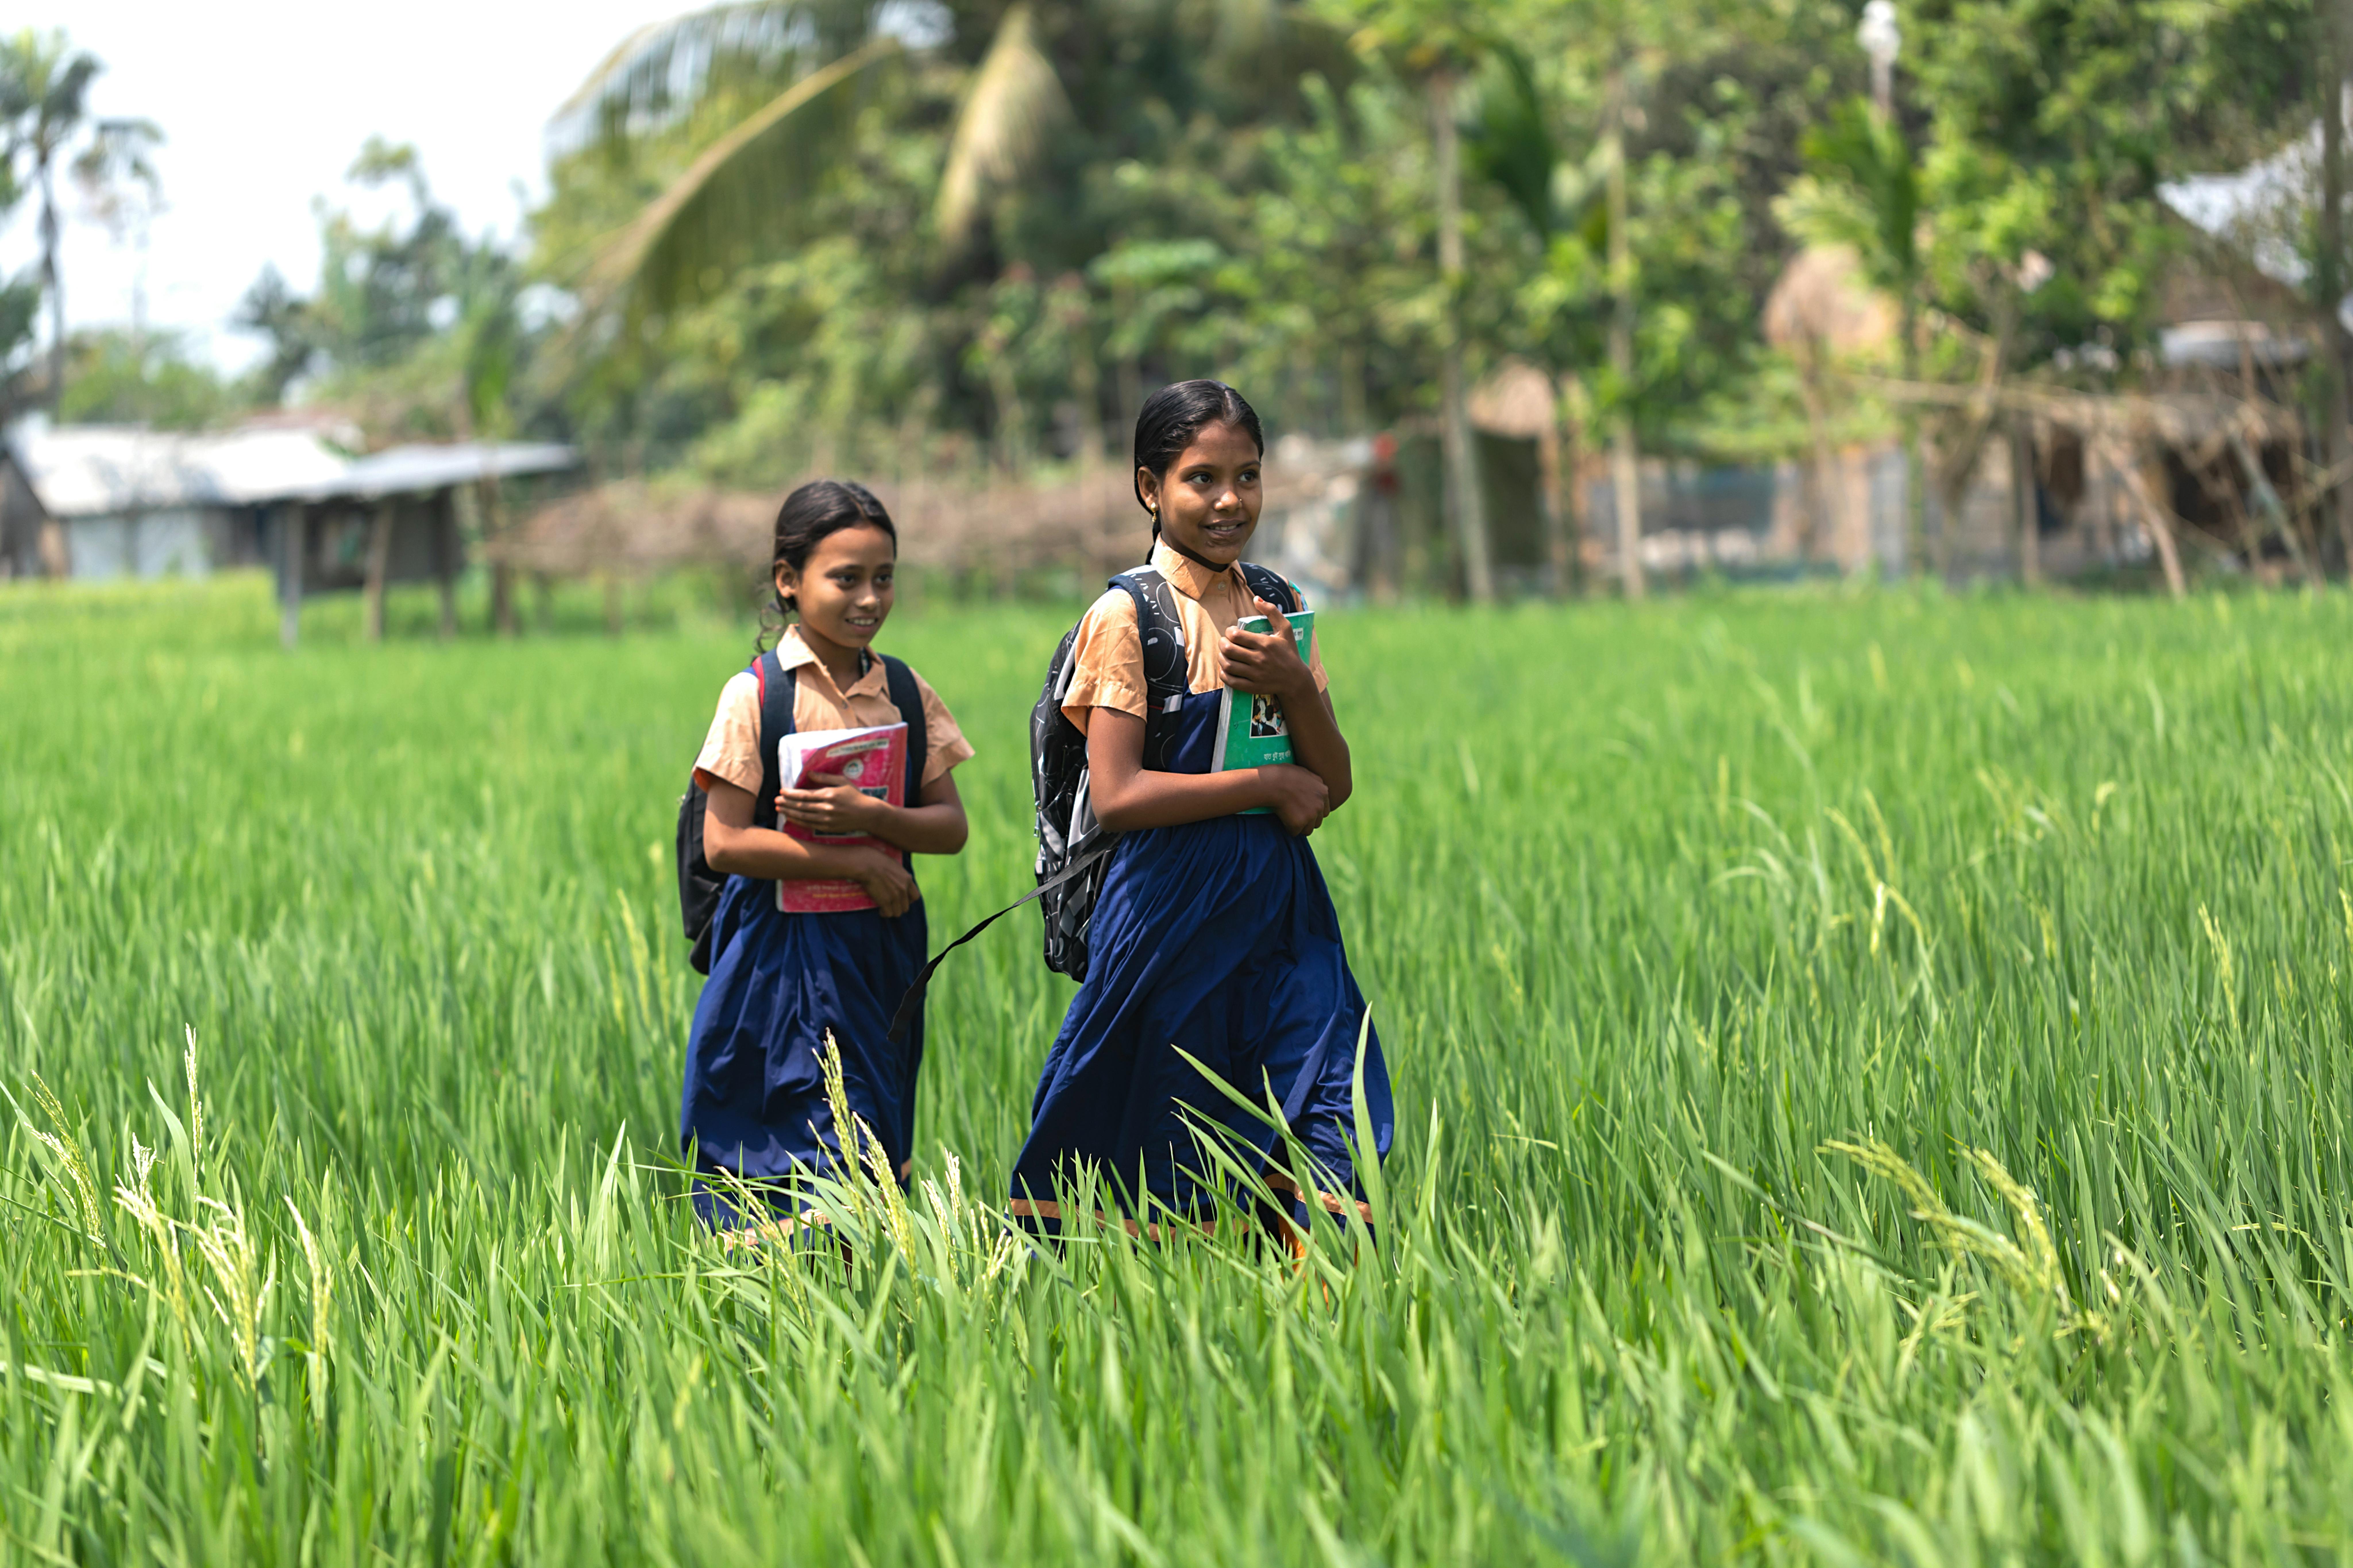 Shohana e la sua amica passeggiano lungo il sentiero che le porta a scuola. Sono dieci minuti di cammino tra le verdi risaie di Mymensingh, il villaggio in cui vivono in Bangladesh.